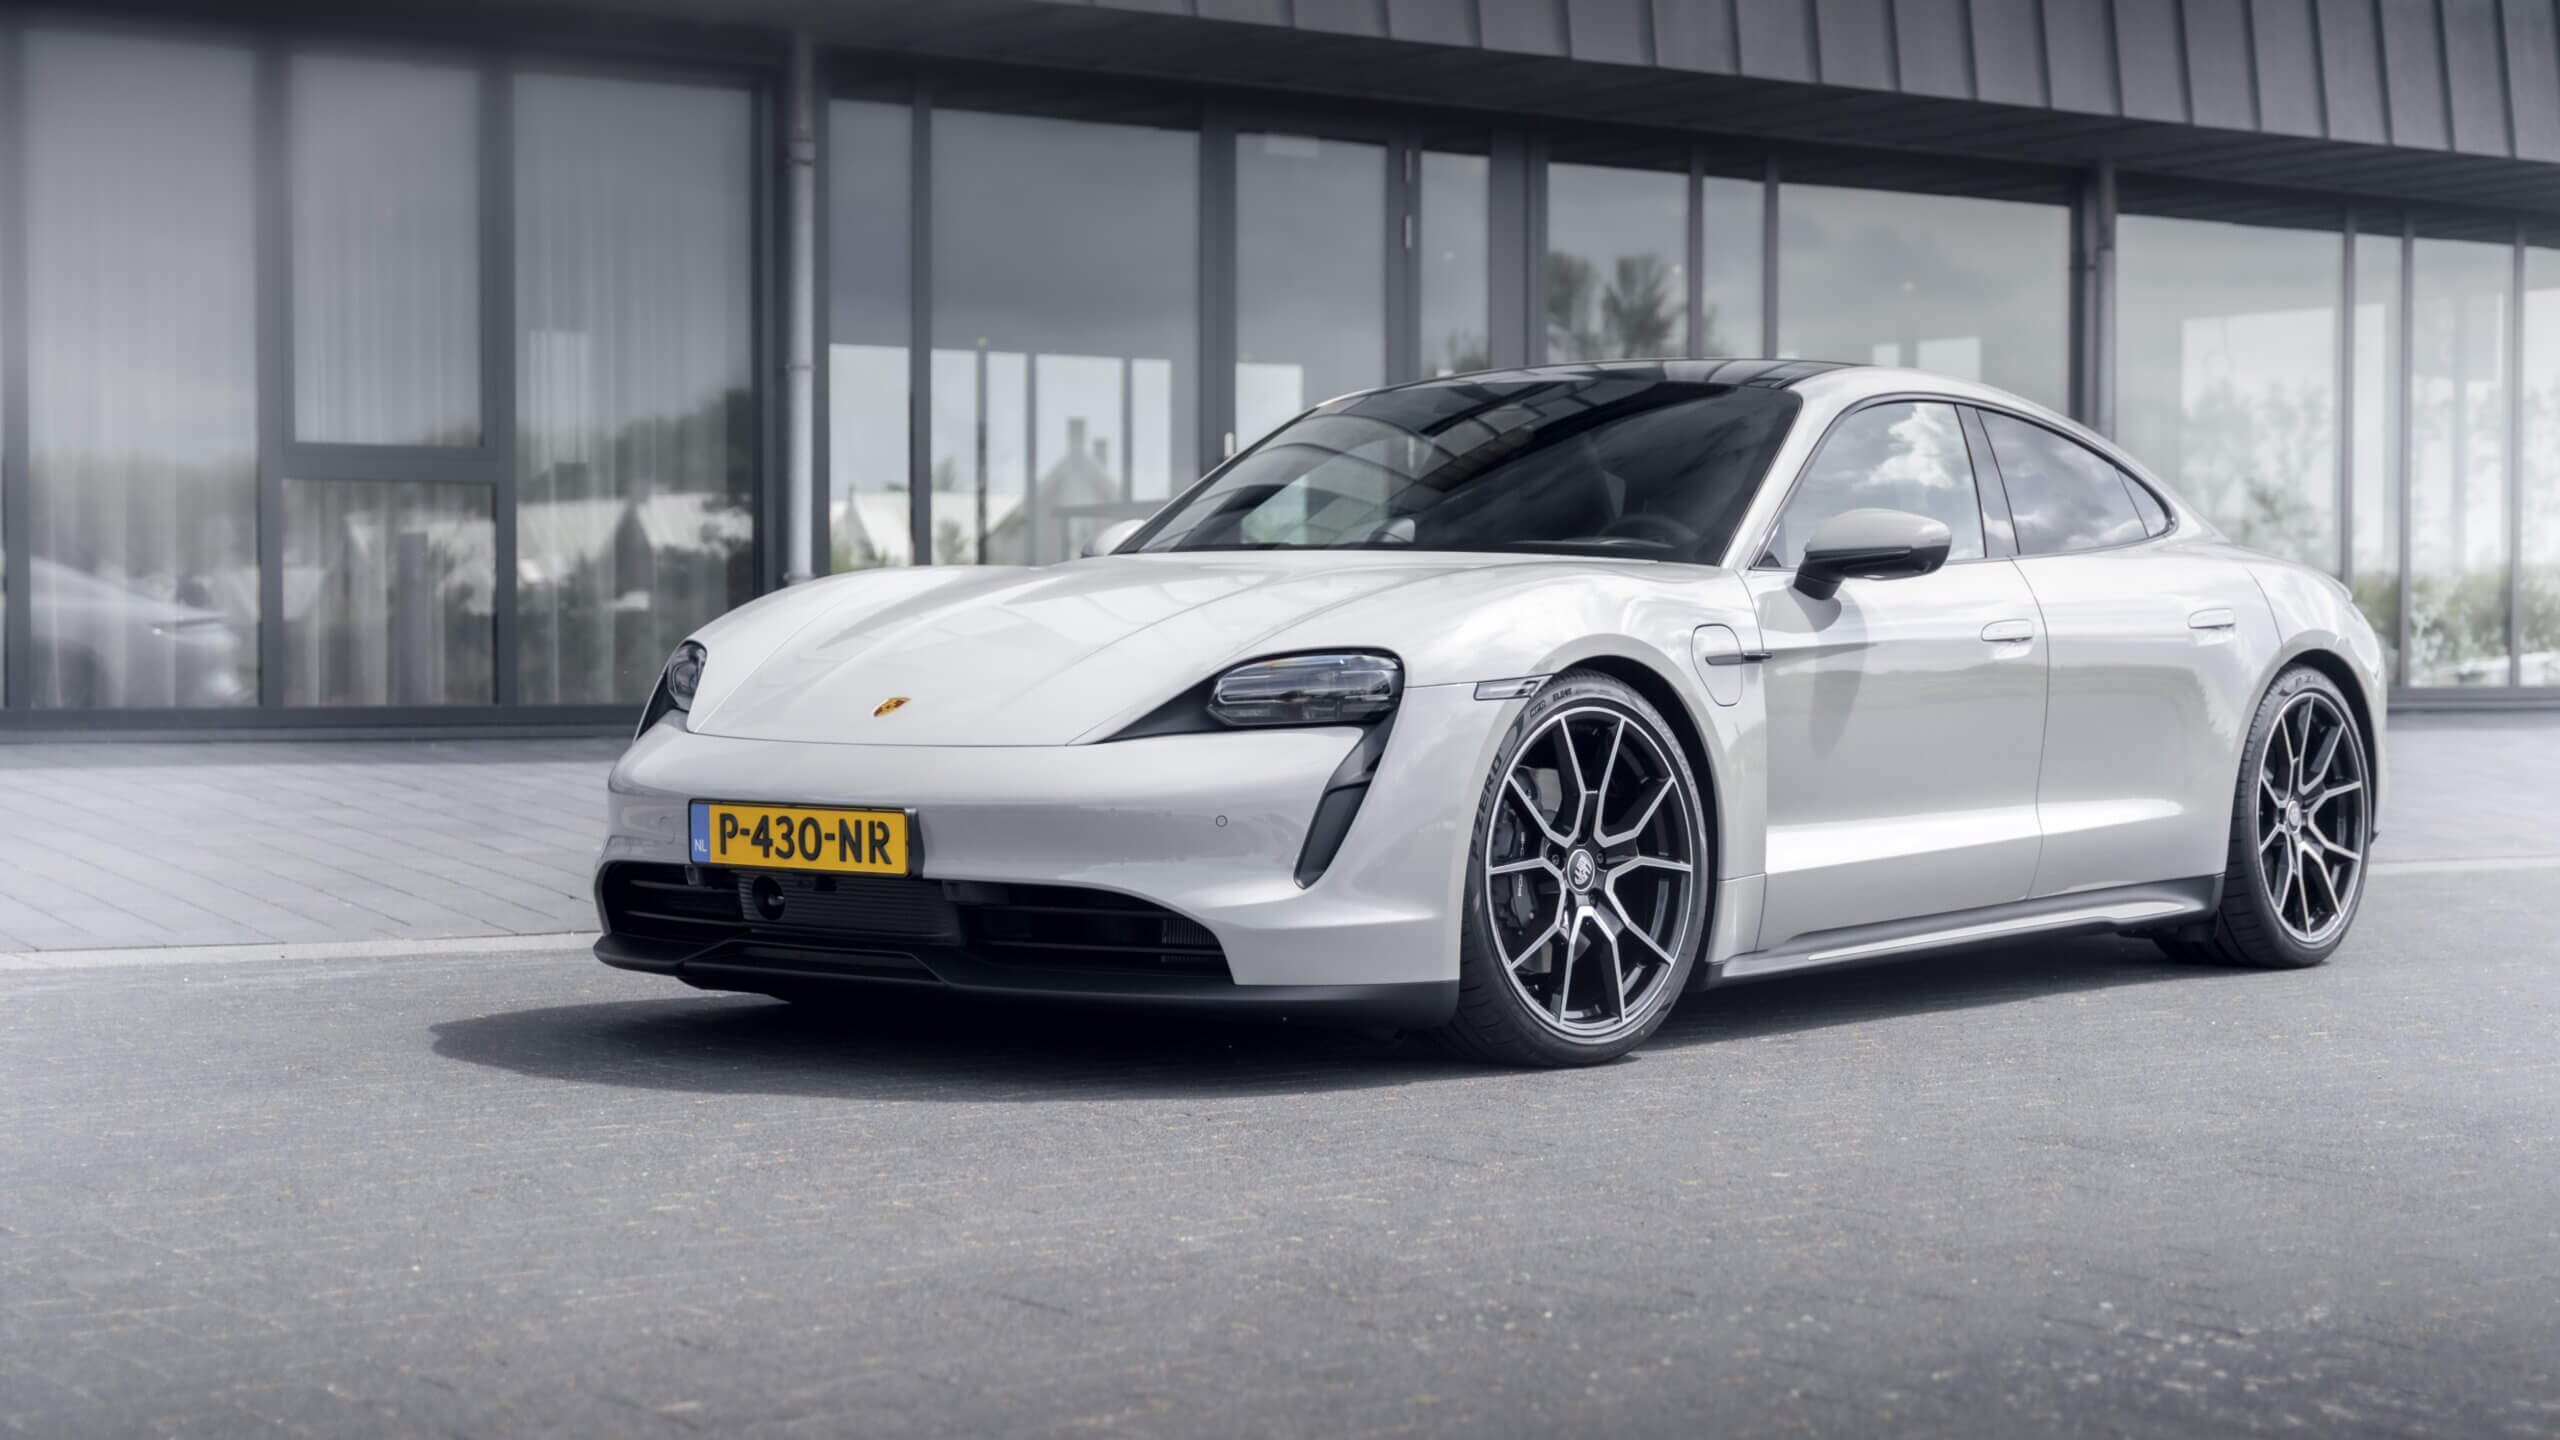 Professionele Porsche bedrijfswagens van premium kwaliteit voor zakelijke mobiliteit in Roosendaal